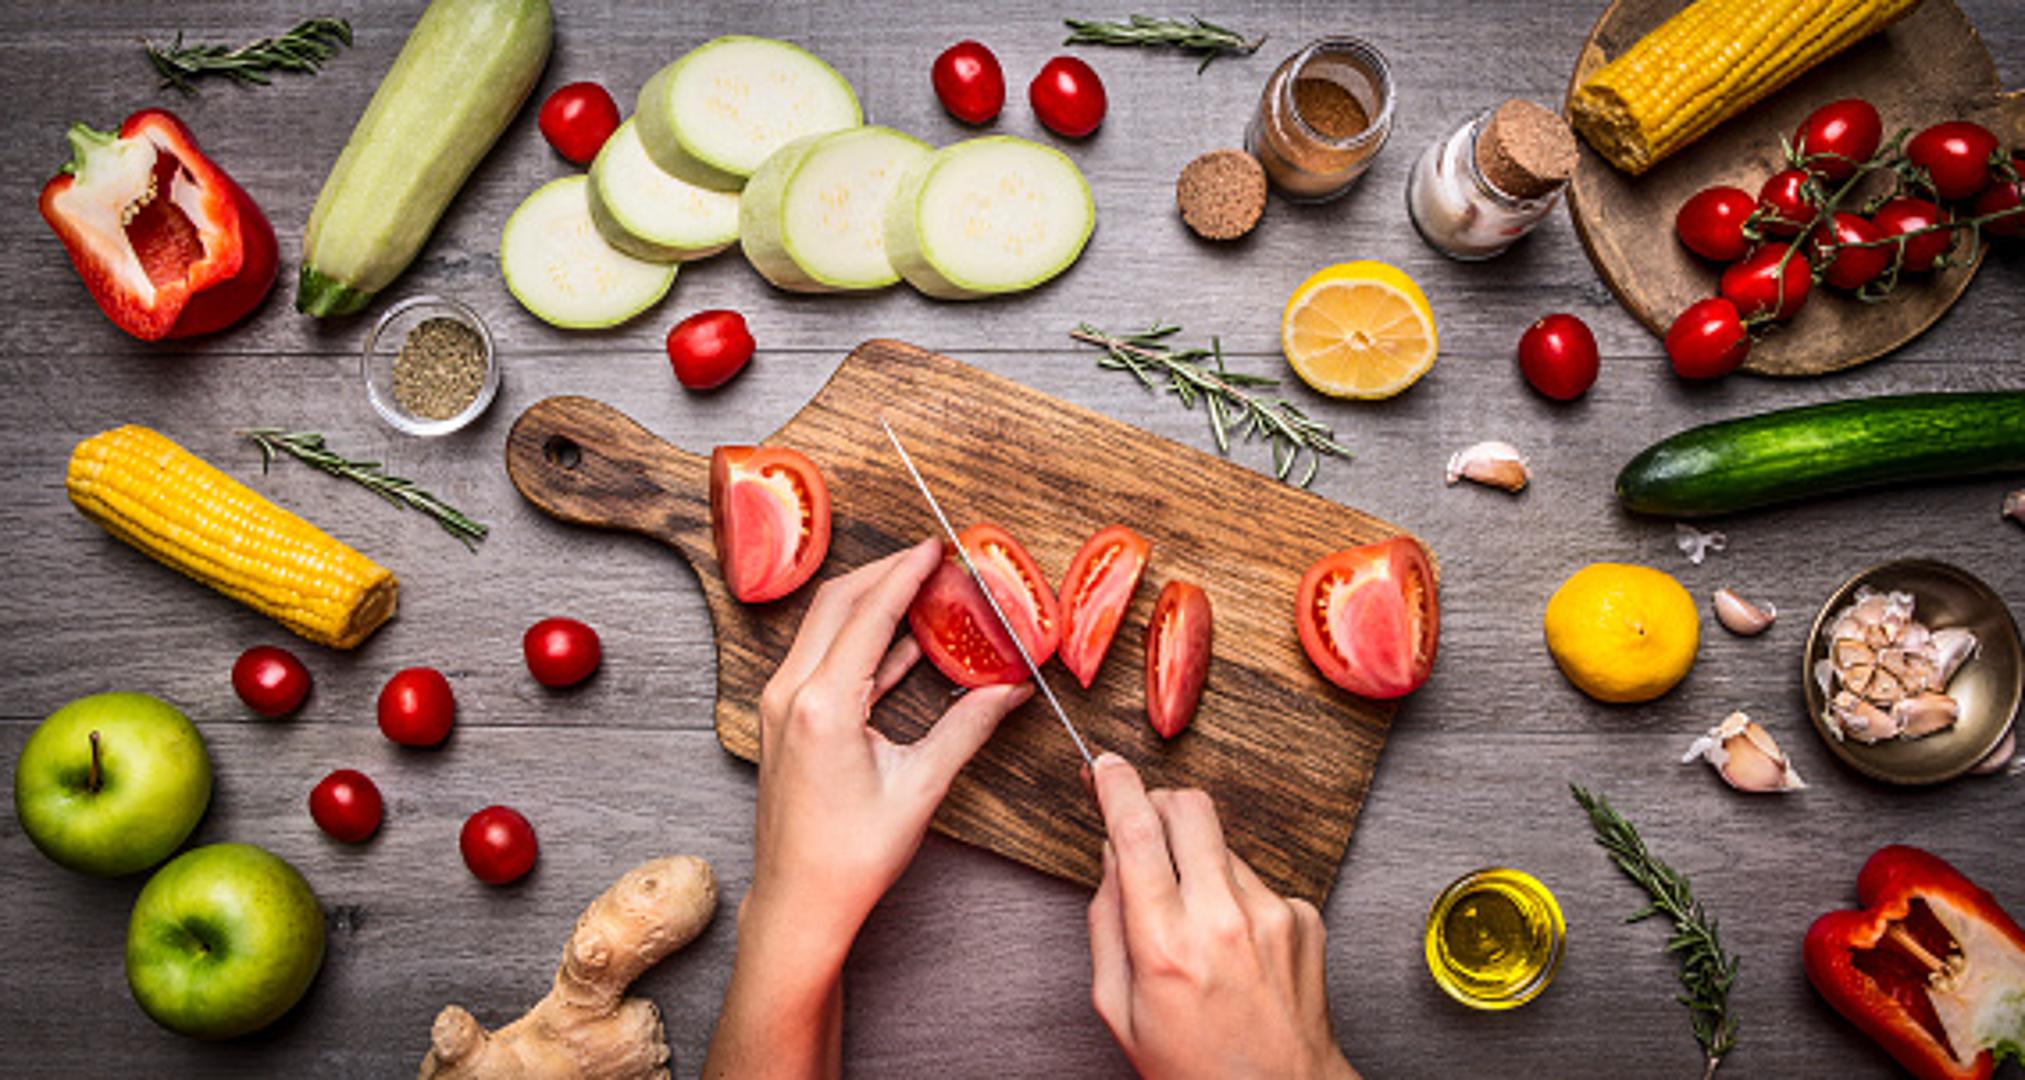 Kuhanje voća i povrća smanjuje njegovu nutritivnu vrijednost – Istina je da kuhanjem uništavamo neke osjetljive vitamine poput vitamina C ili folnu kiselinu. No, u mnogim slučajevima kuhanjem se 'otključavaju' zdravstvene koristi voća i povrća.